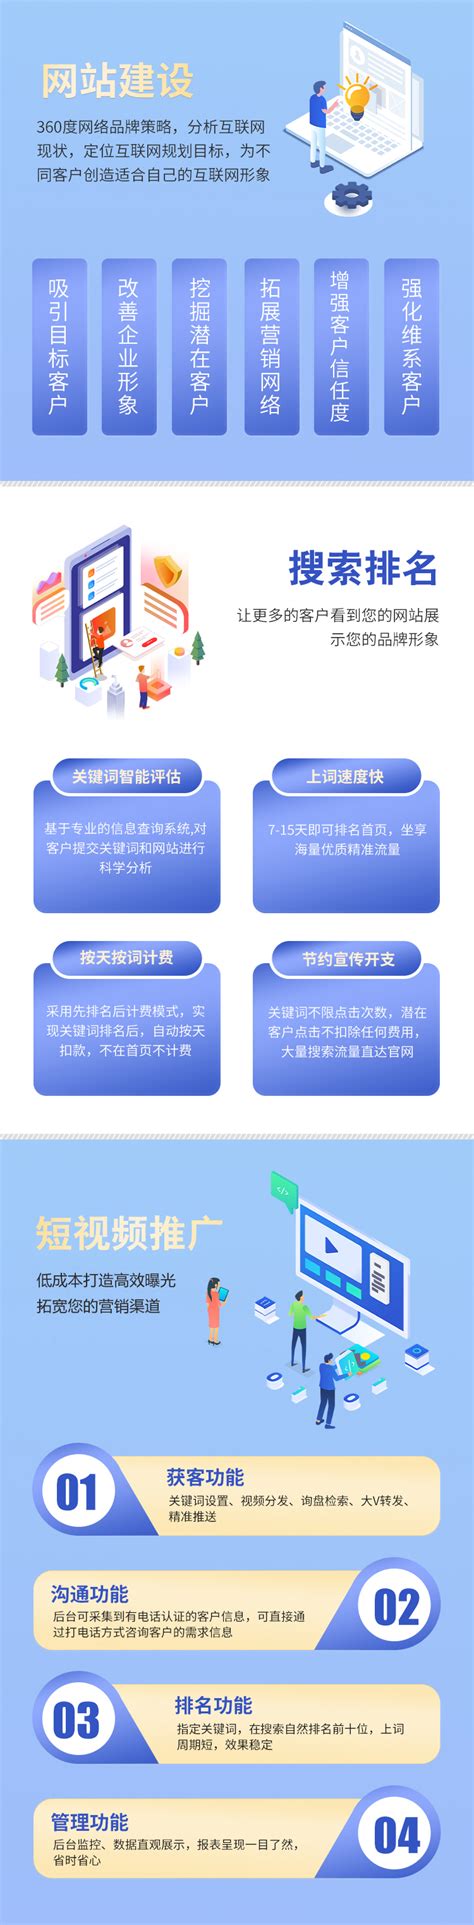 重庆企业网站建设制作推广